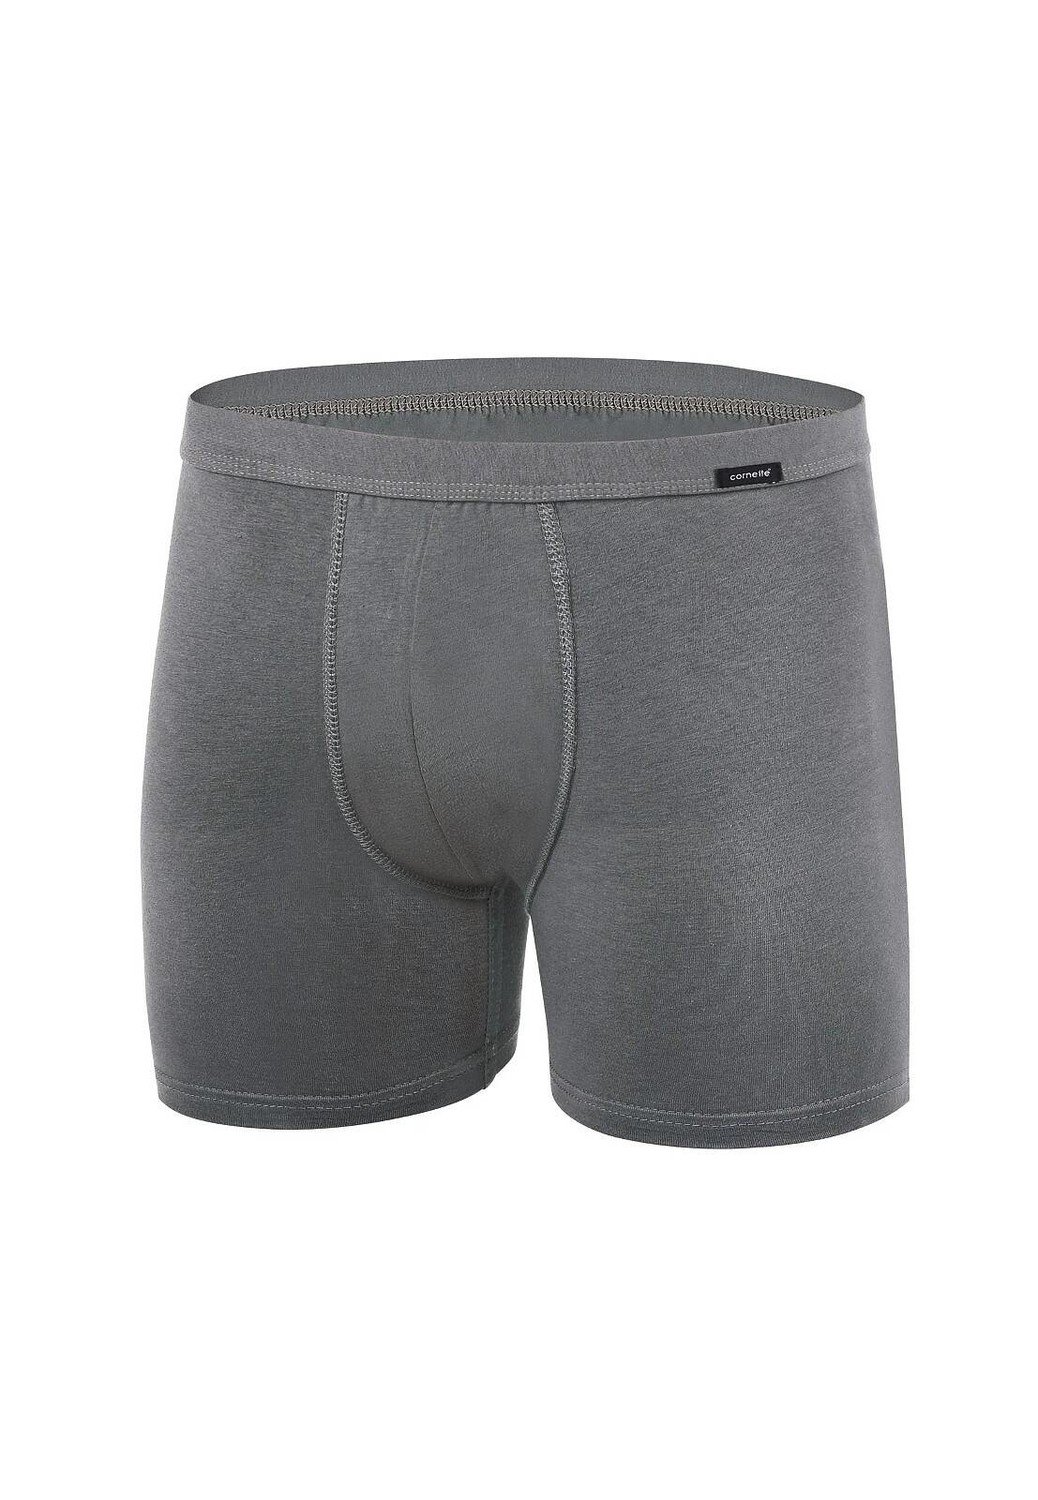 Boxer shorts Cornette Authentic Perfect 092 3XL-5XL khaki 091